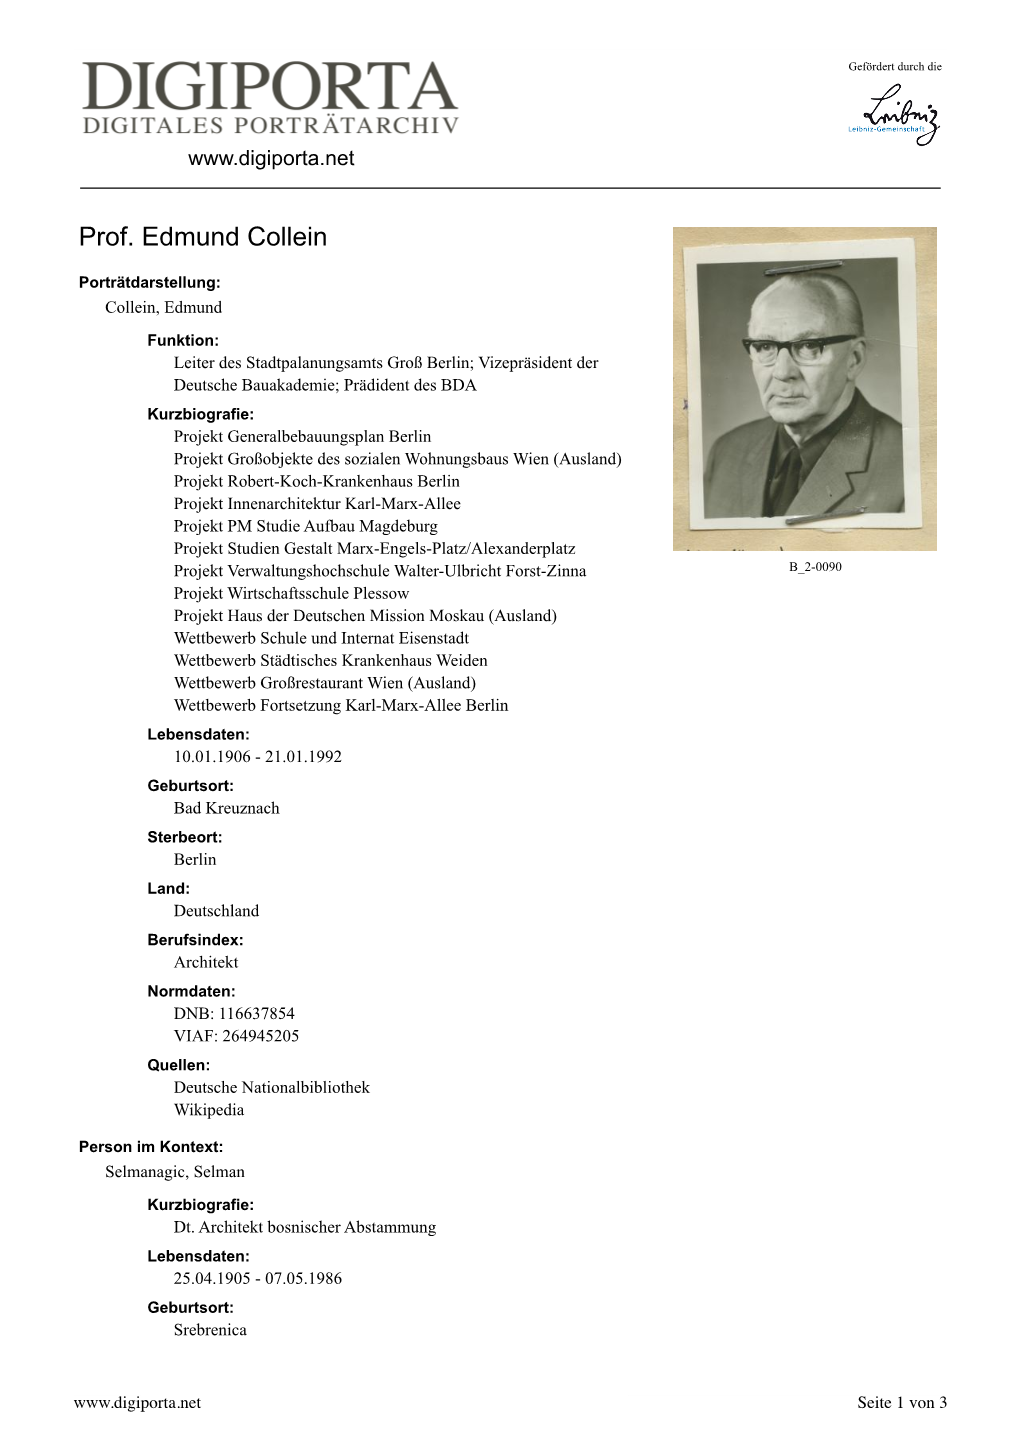 Prof. Edmund Collein